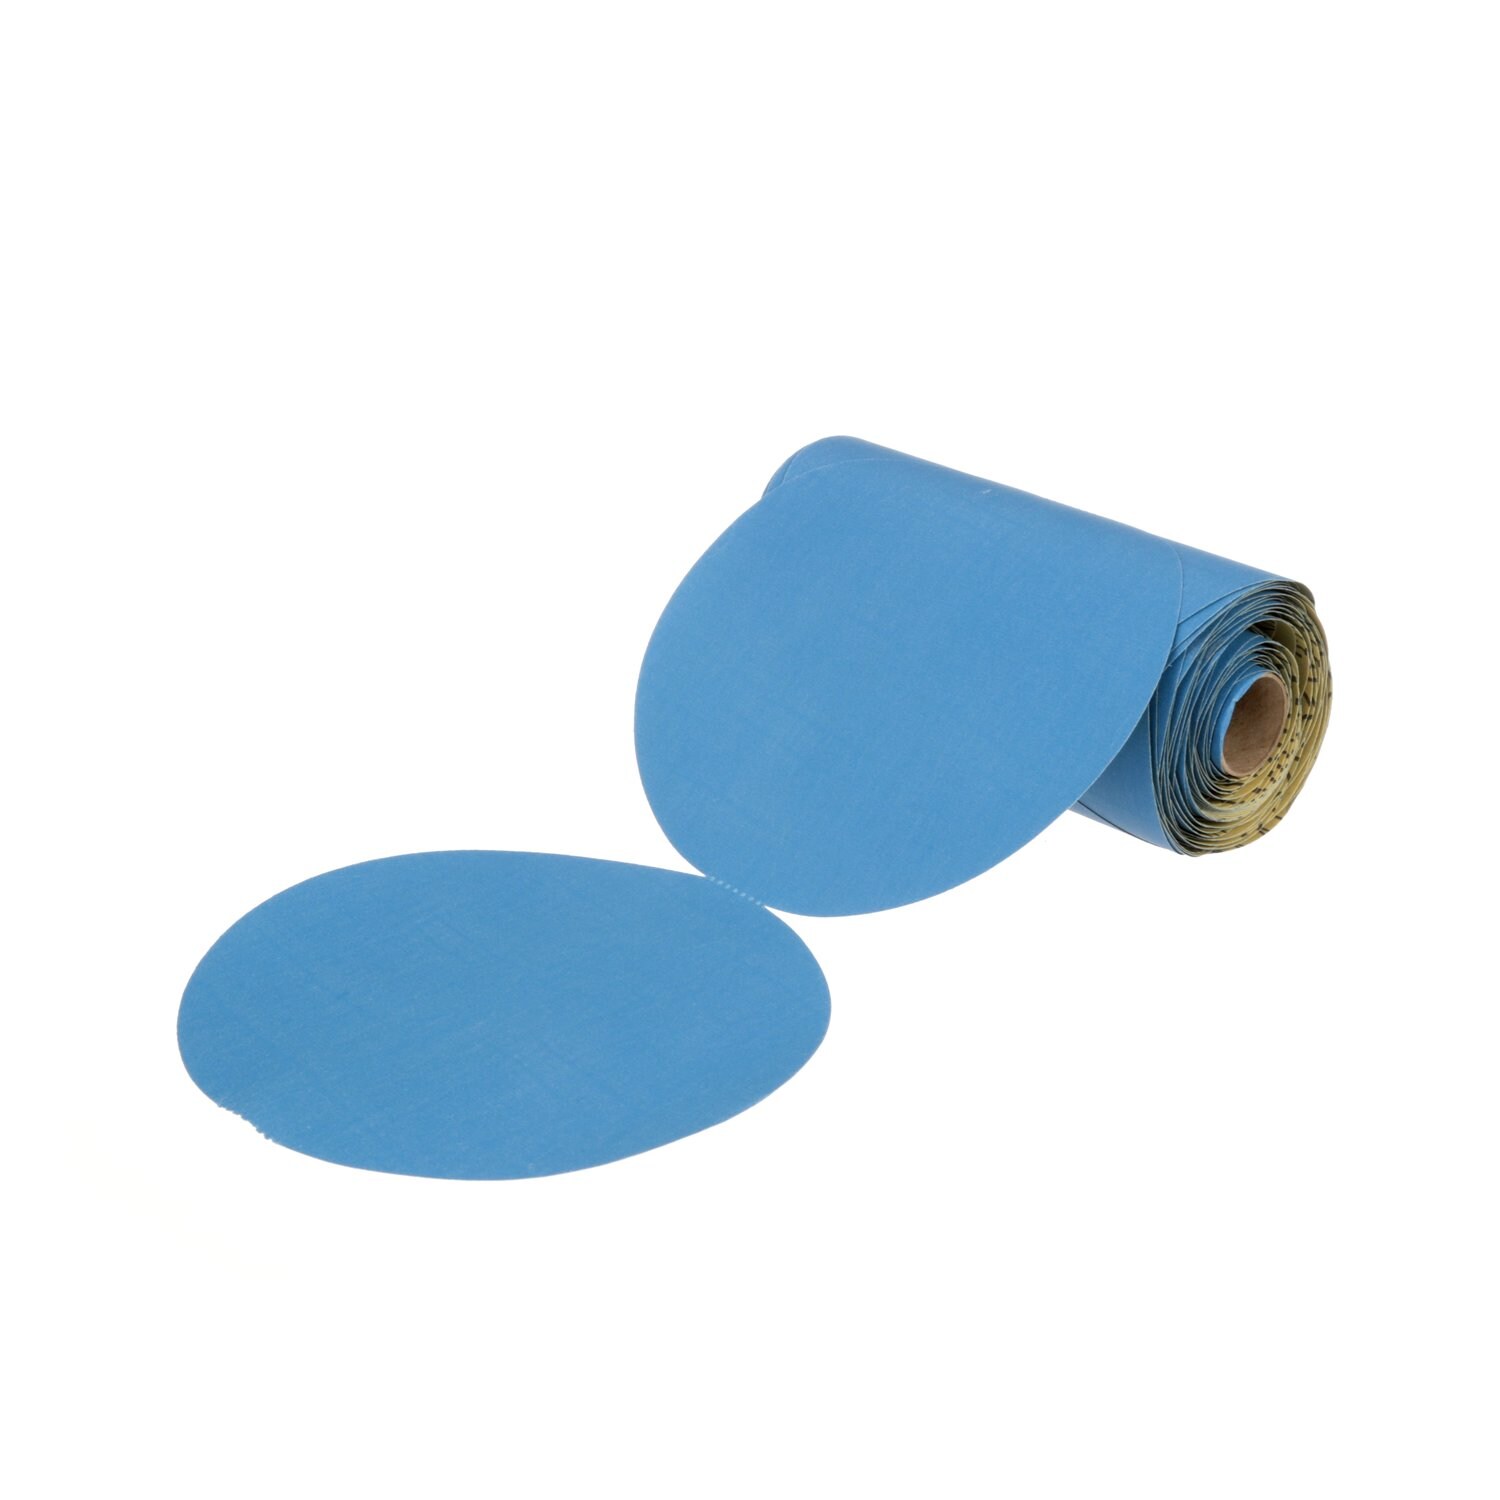 7100215729 - 3M Stikit Blue Abrasive Disc Roll 36210, 6 in, 320 Grade, 100 Discs/Roll, 5 Rolls/Case